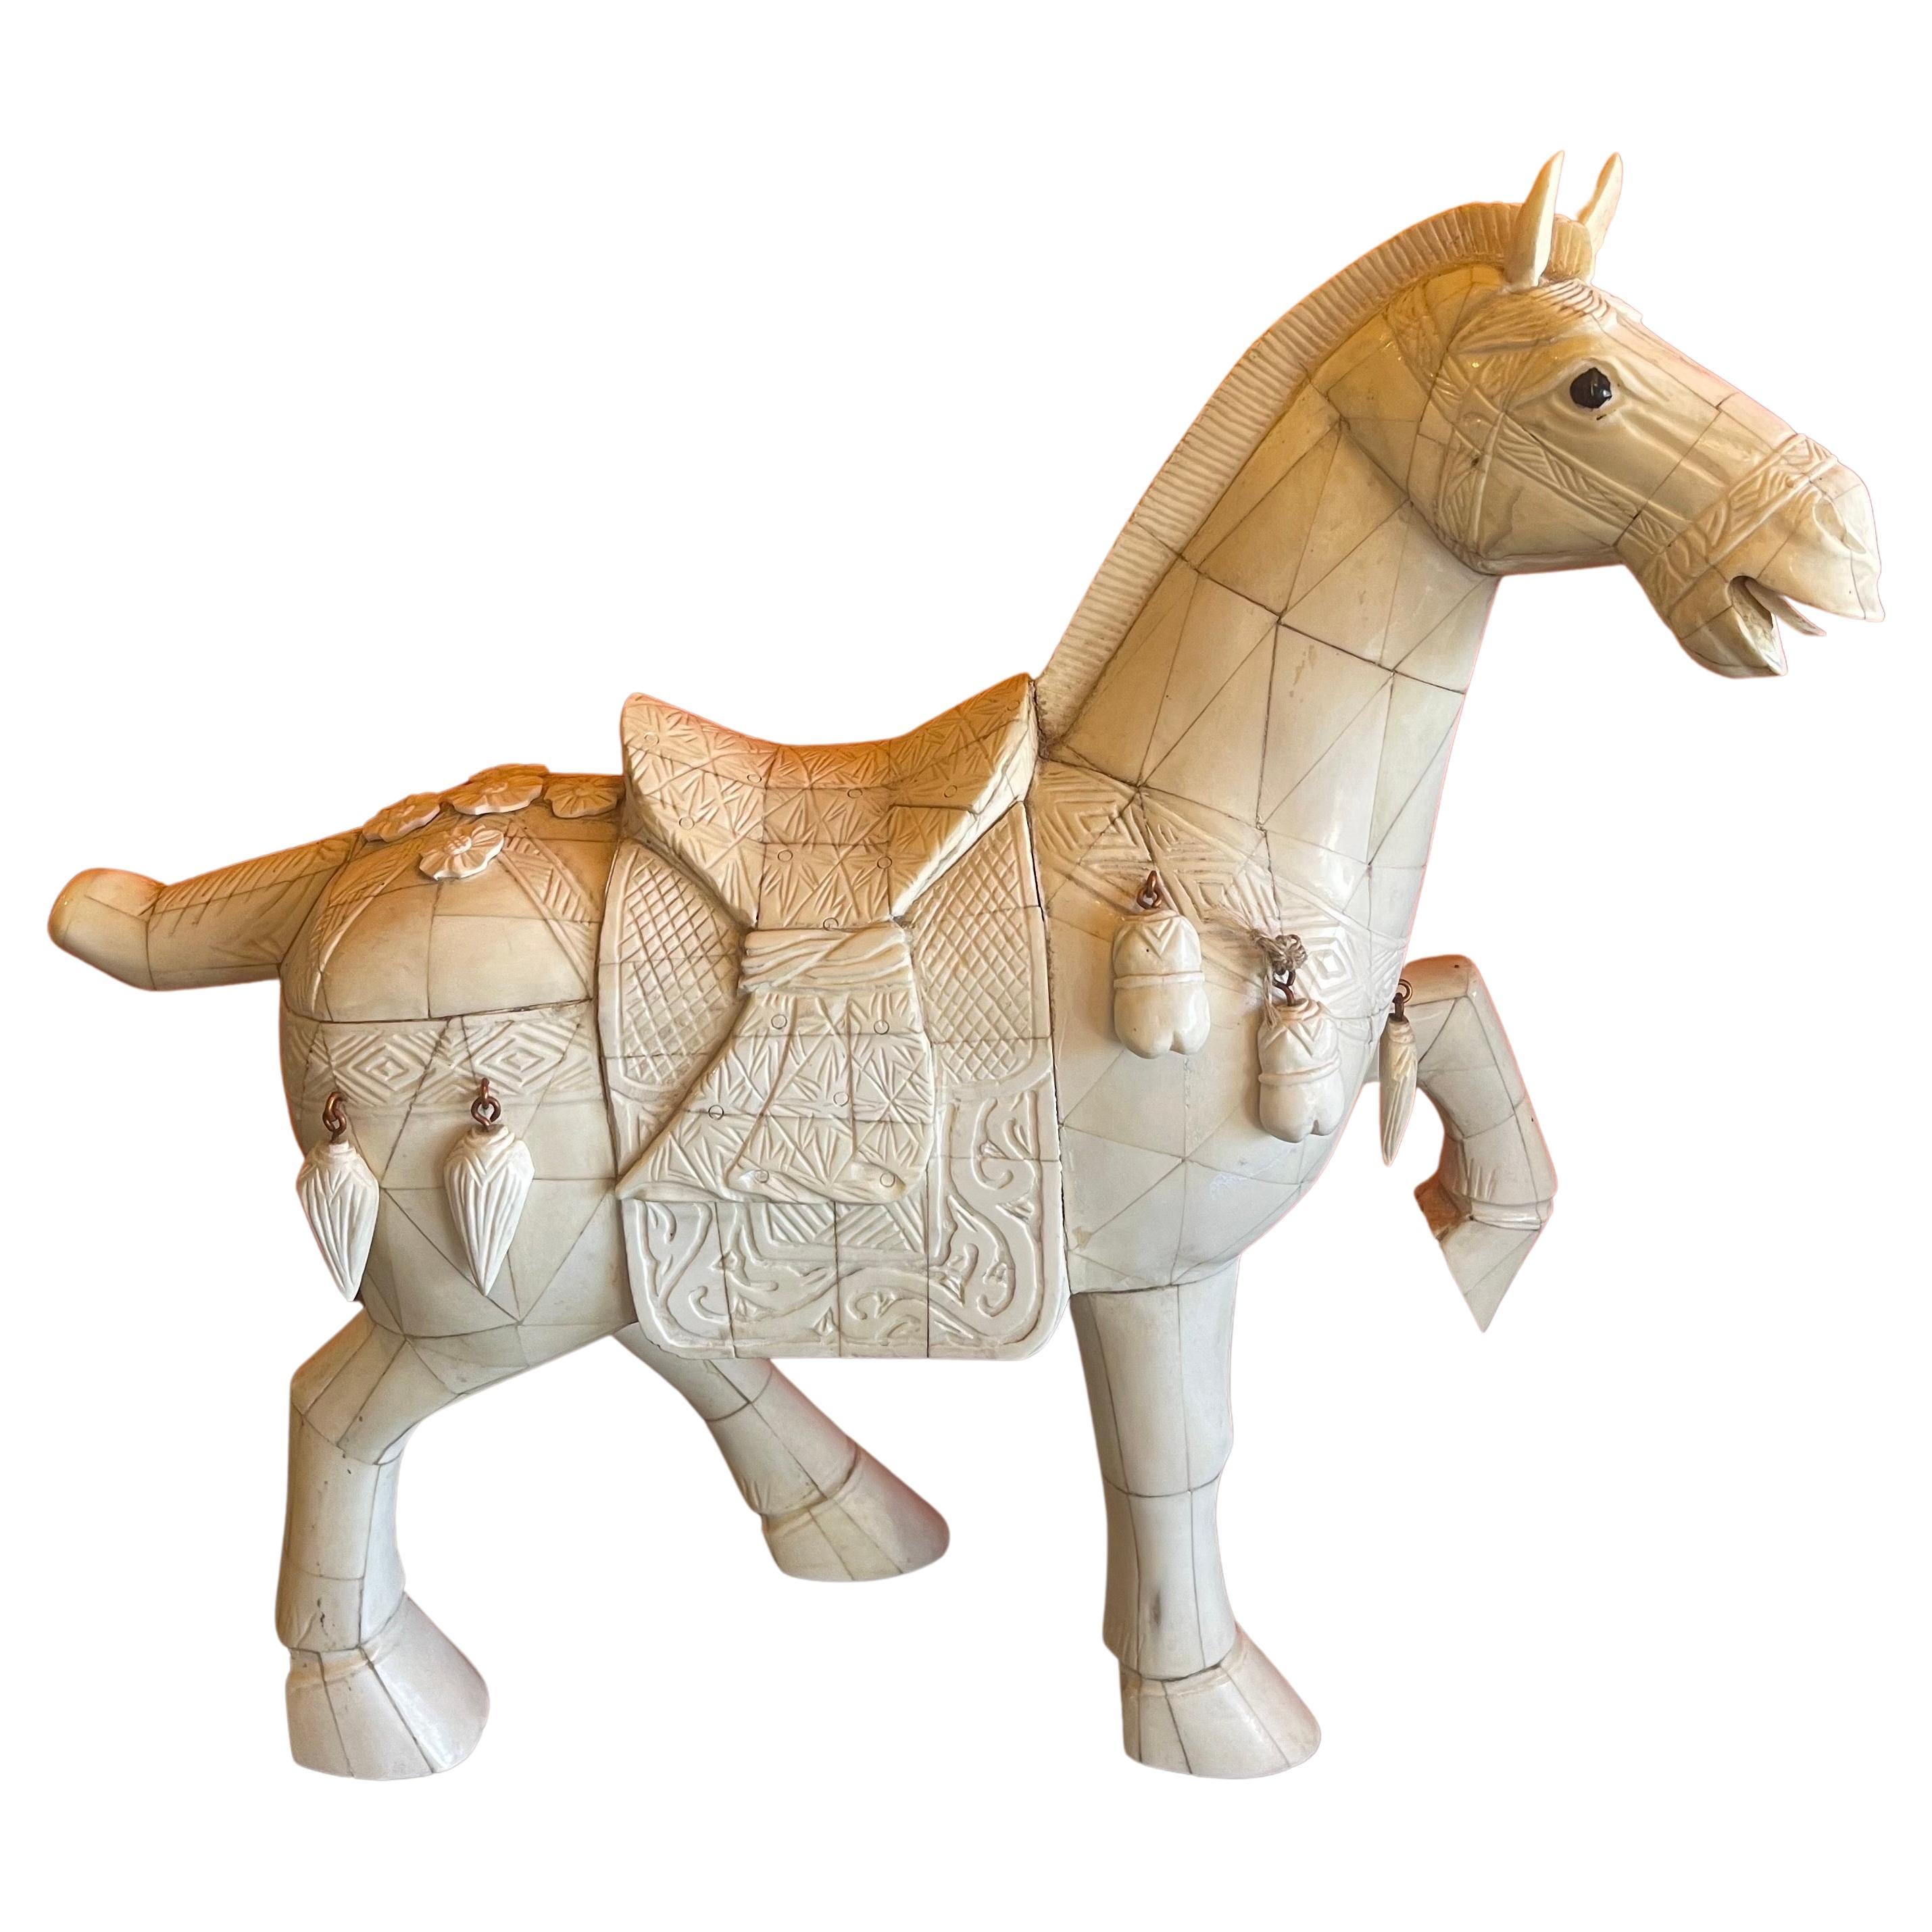 Chinesische T'ang-Pferdeskulptur aus Knochen mit Mosaik